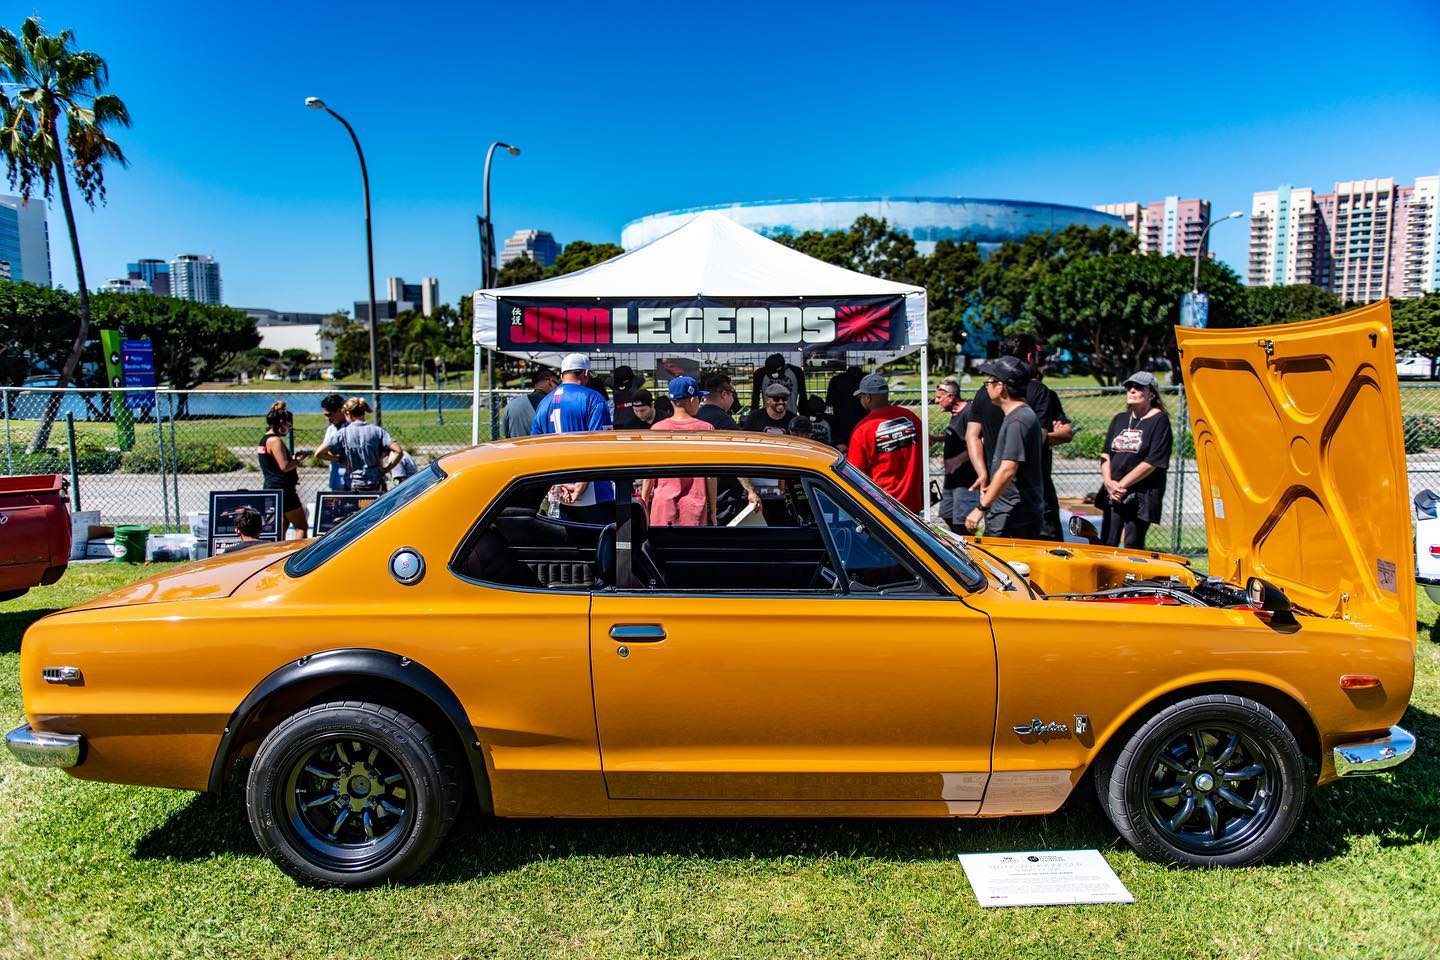 JDM Legends Nissan Skyline on display | JCCS Facebook photo